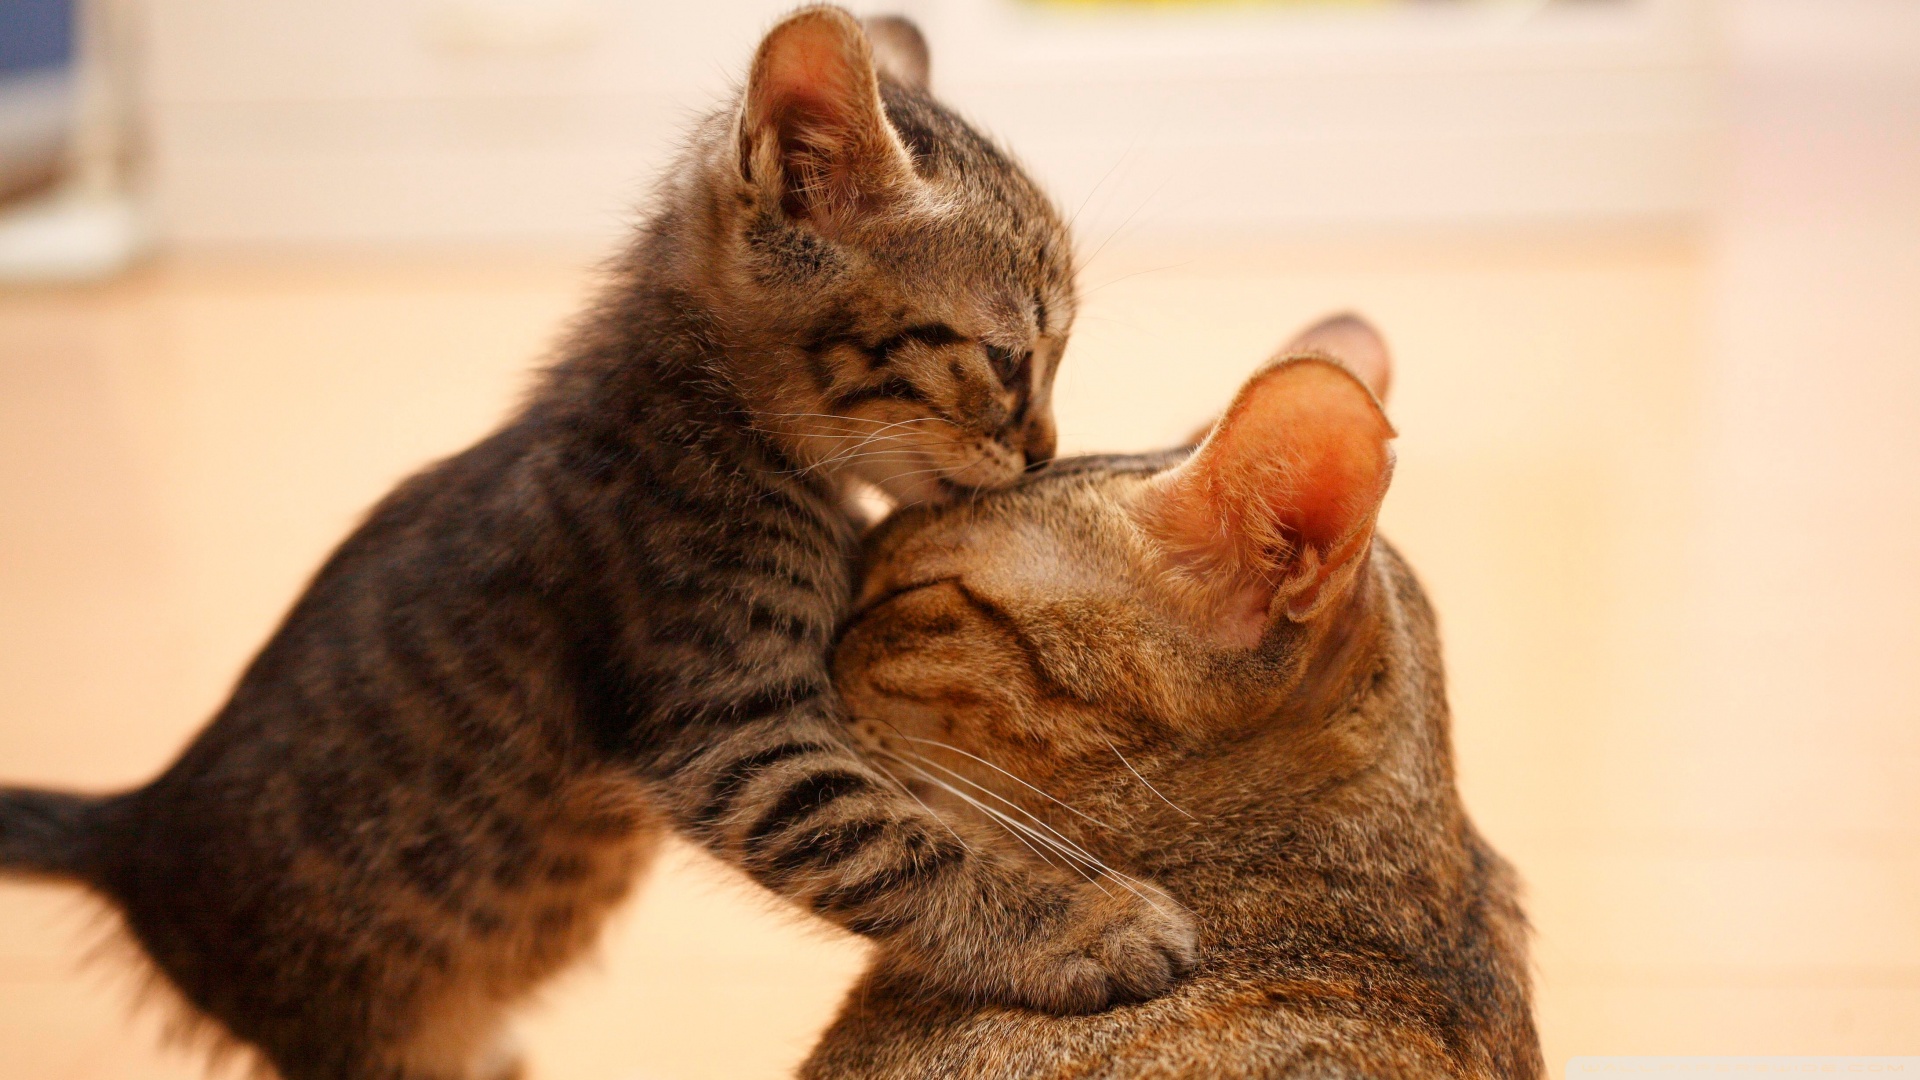 tender_moment_between_a_cat_and_her_kitten-wallpaper-1920x1080.jpg